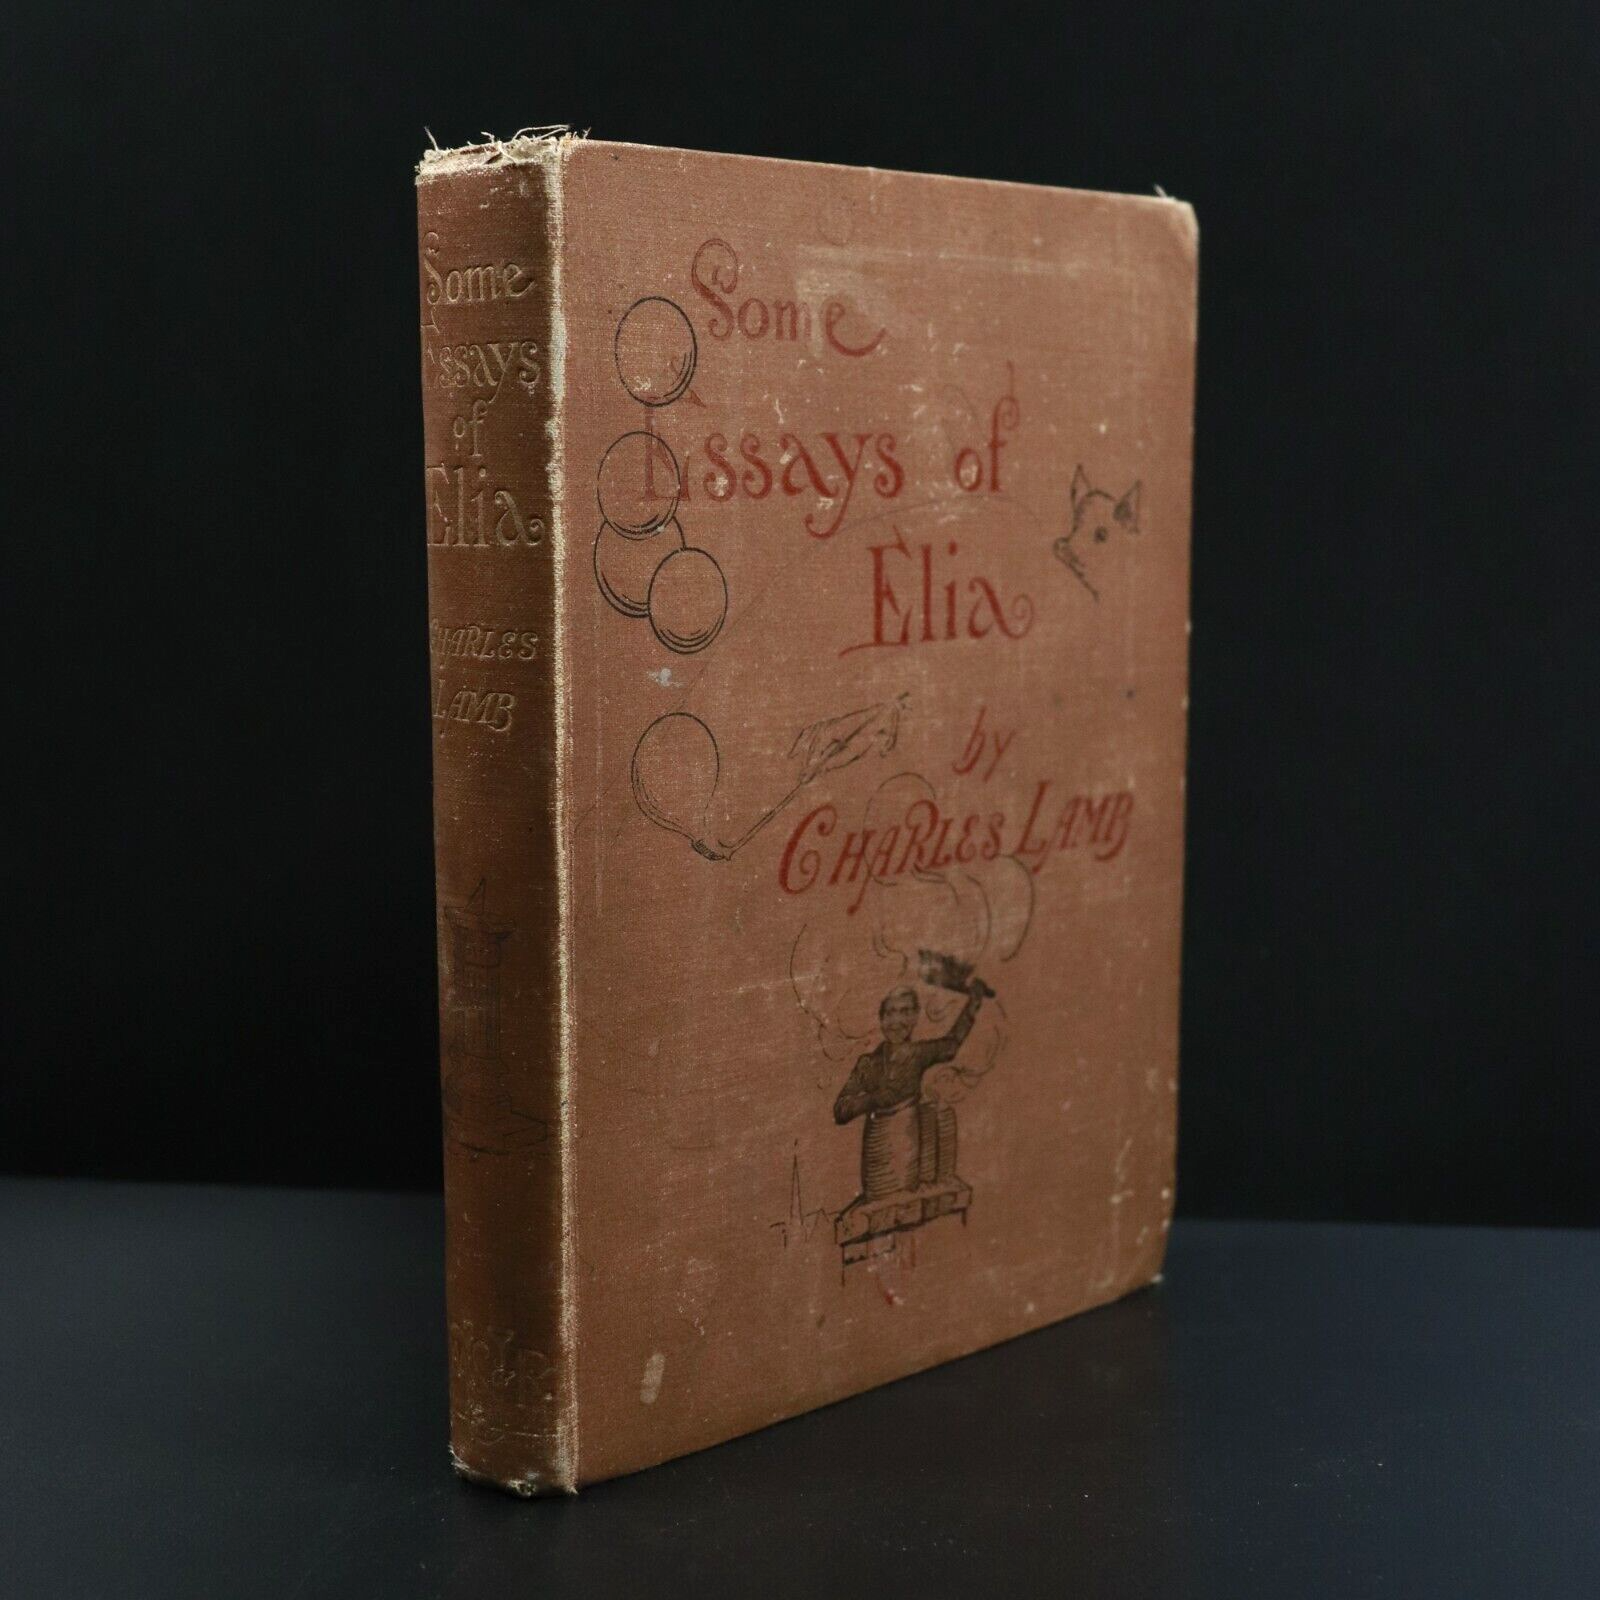 c1895 Some Essays Of Elia by Charles Lamb Antique British Literature Book